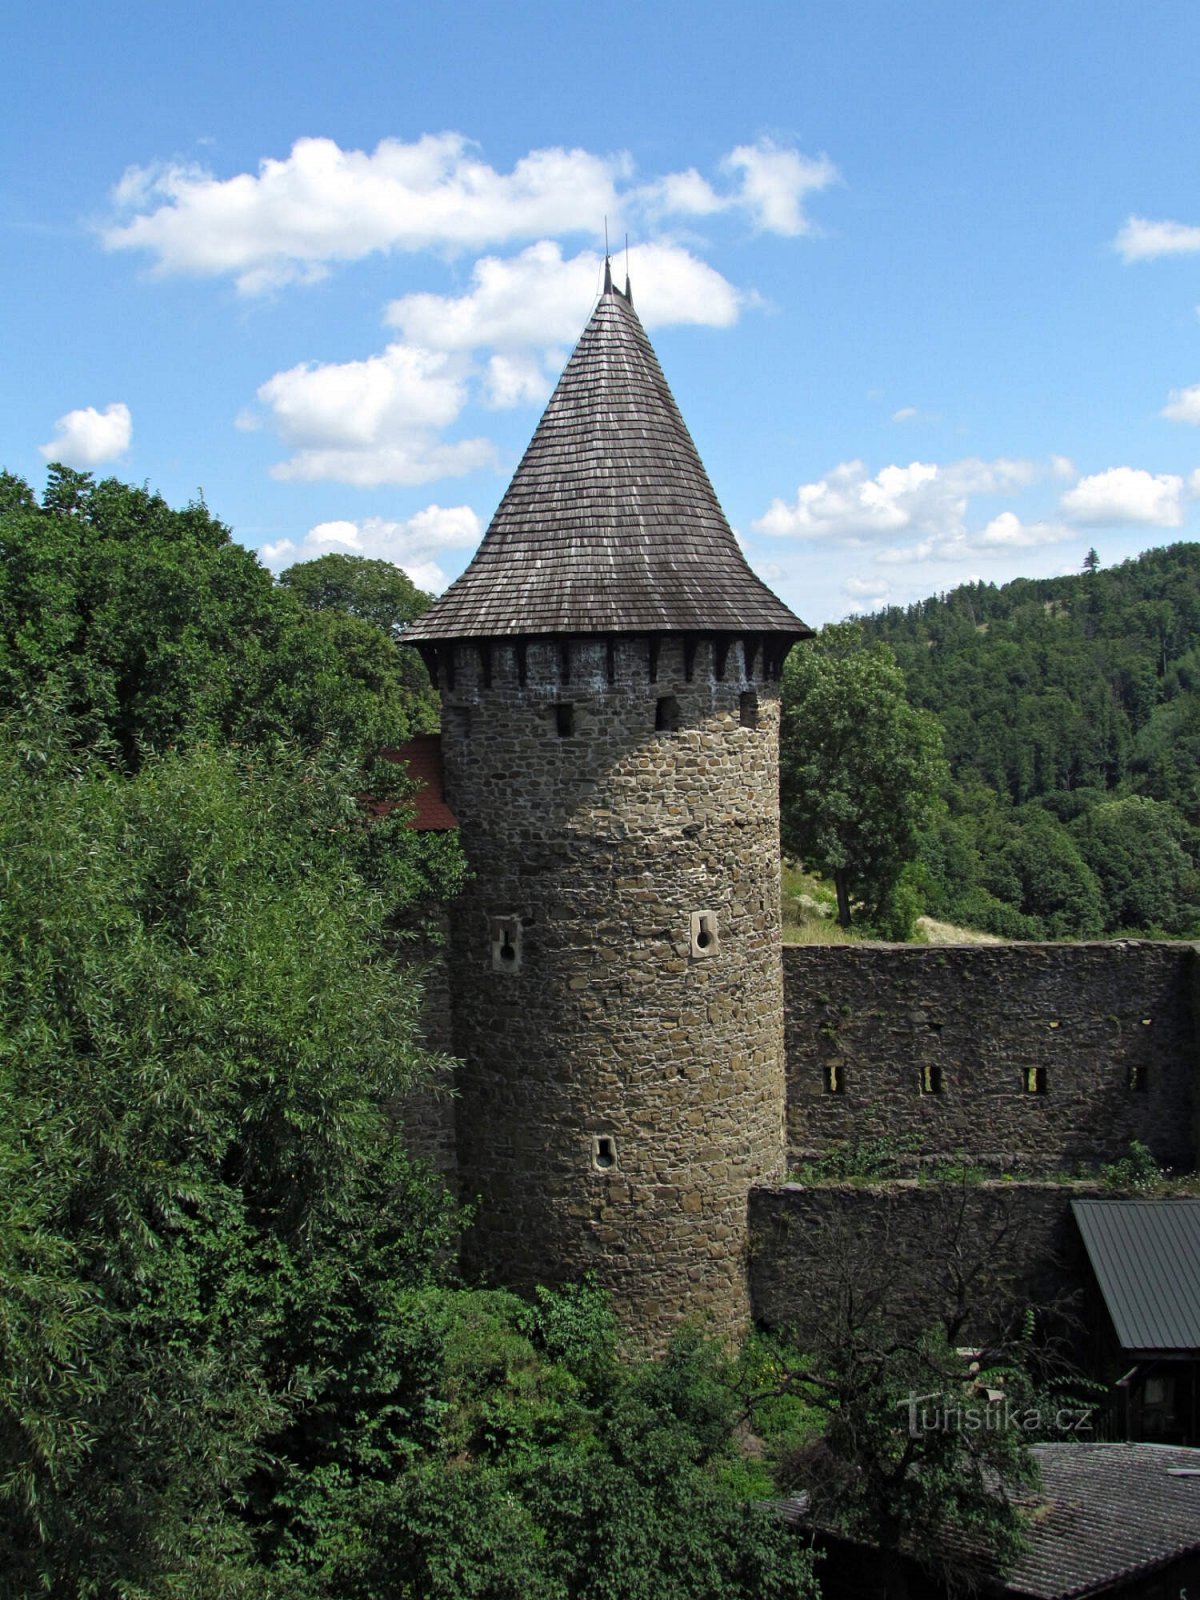 Visita ao Castelo de Helfštýn